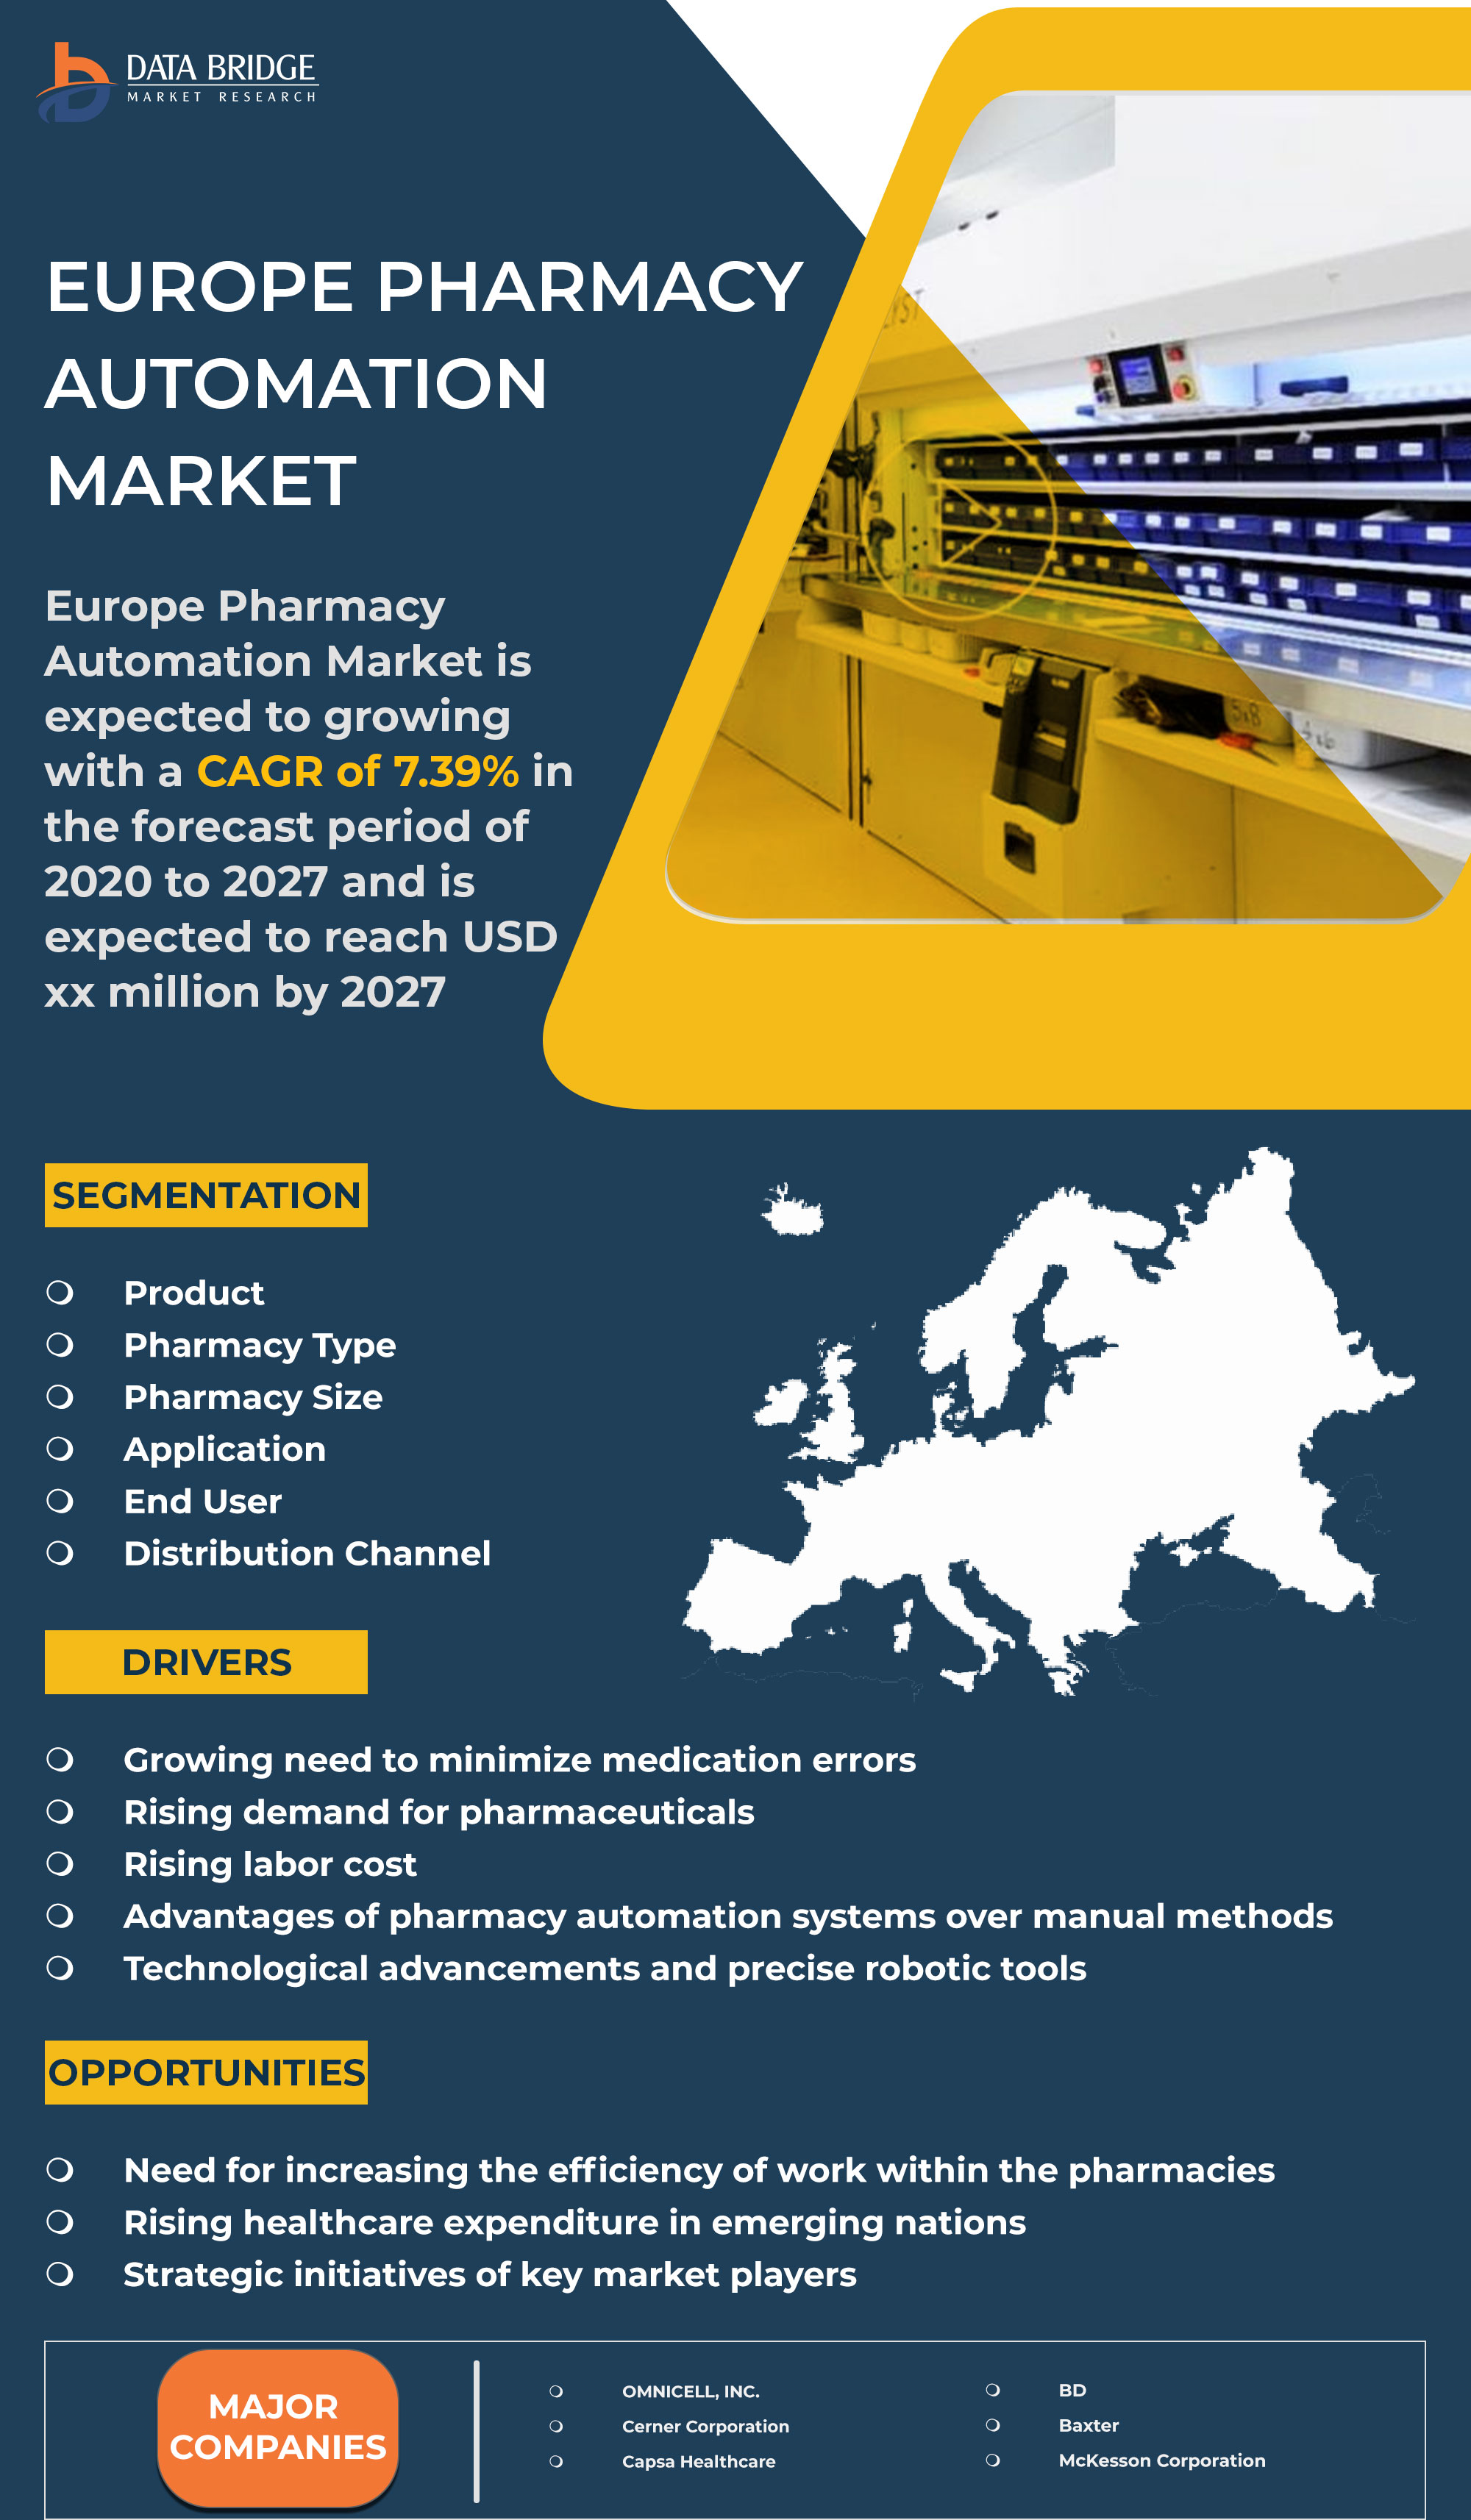 Europe Pharmacy Automation Market